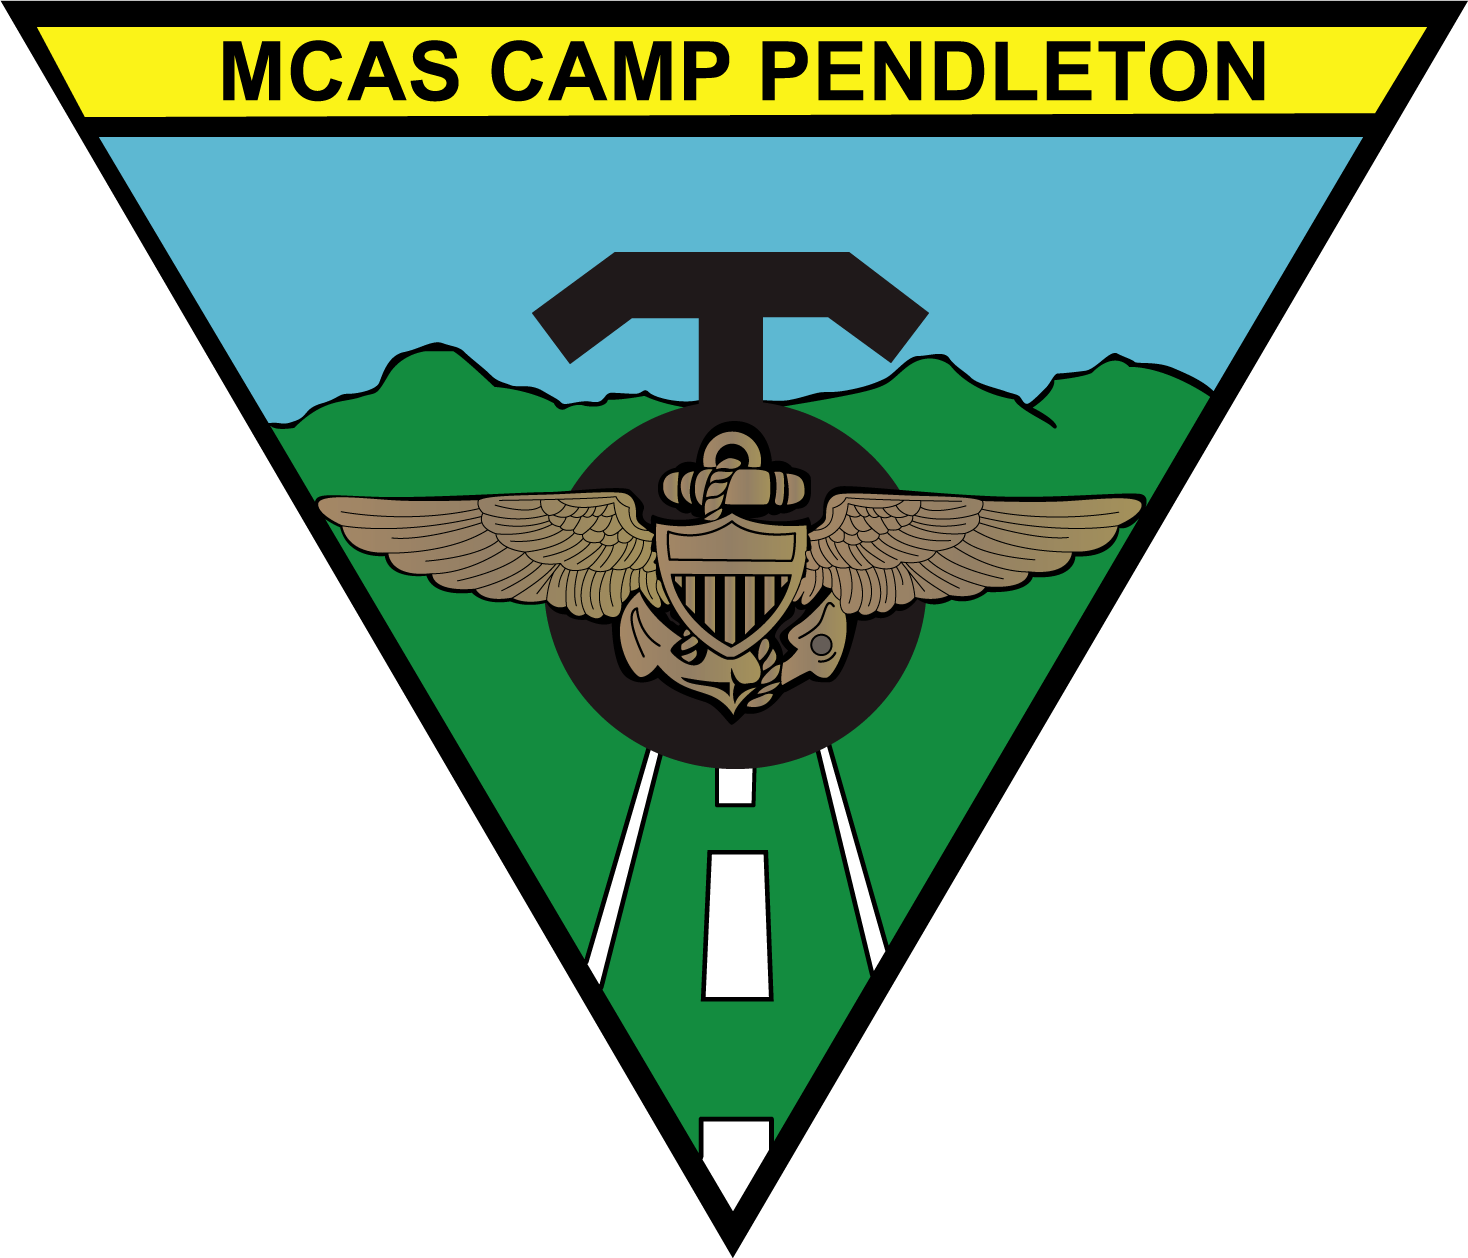 MCAS Camp Pendleton